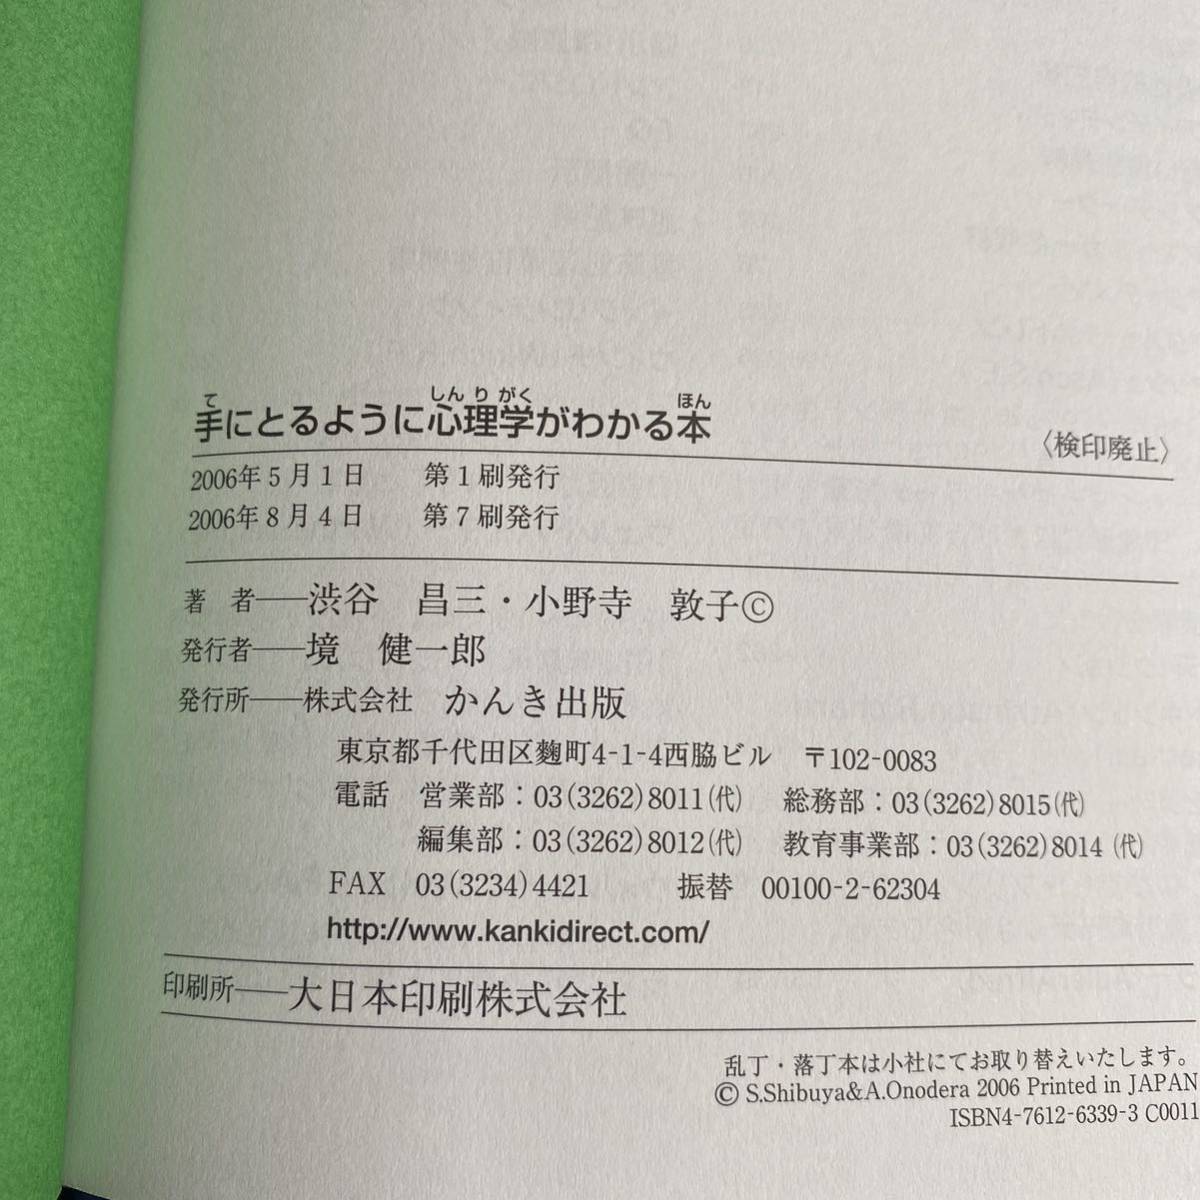  рука ... для . психология . понимать книга@ Shibuya . три | работа Ono храм ..| работа 